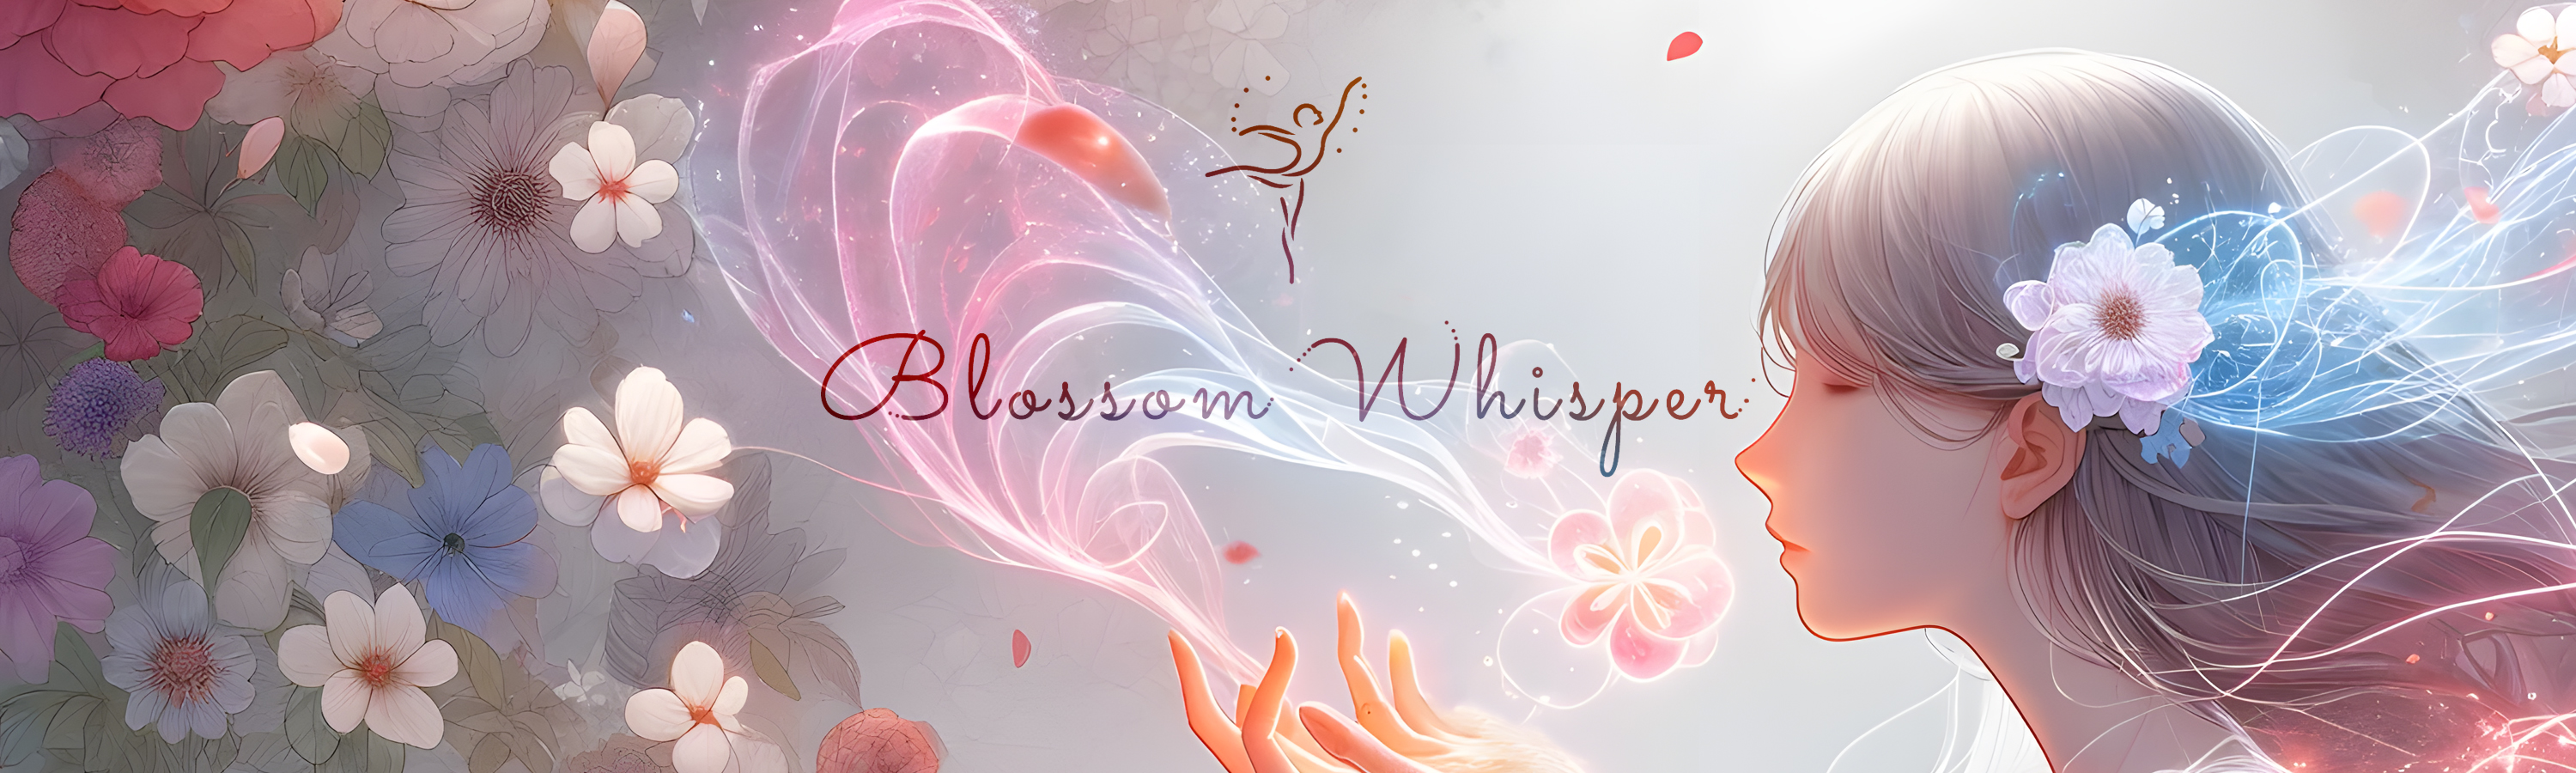 Blossom Whisper 花语